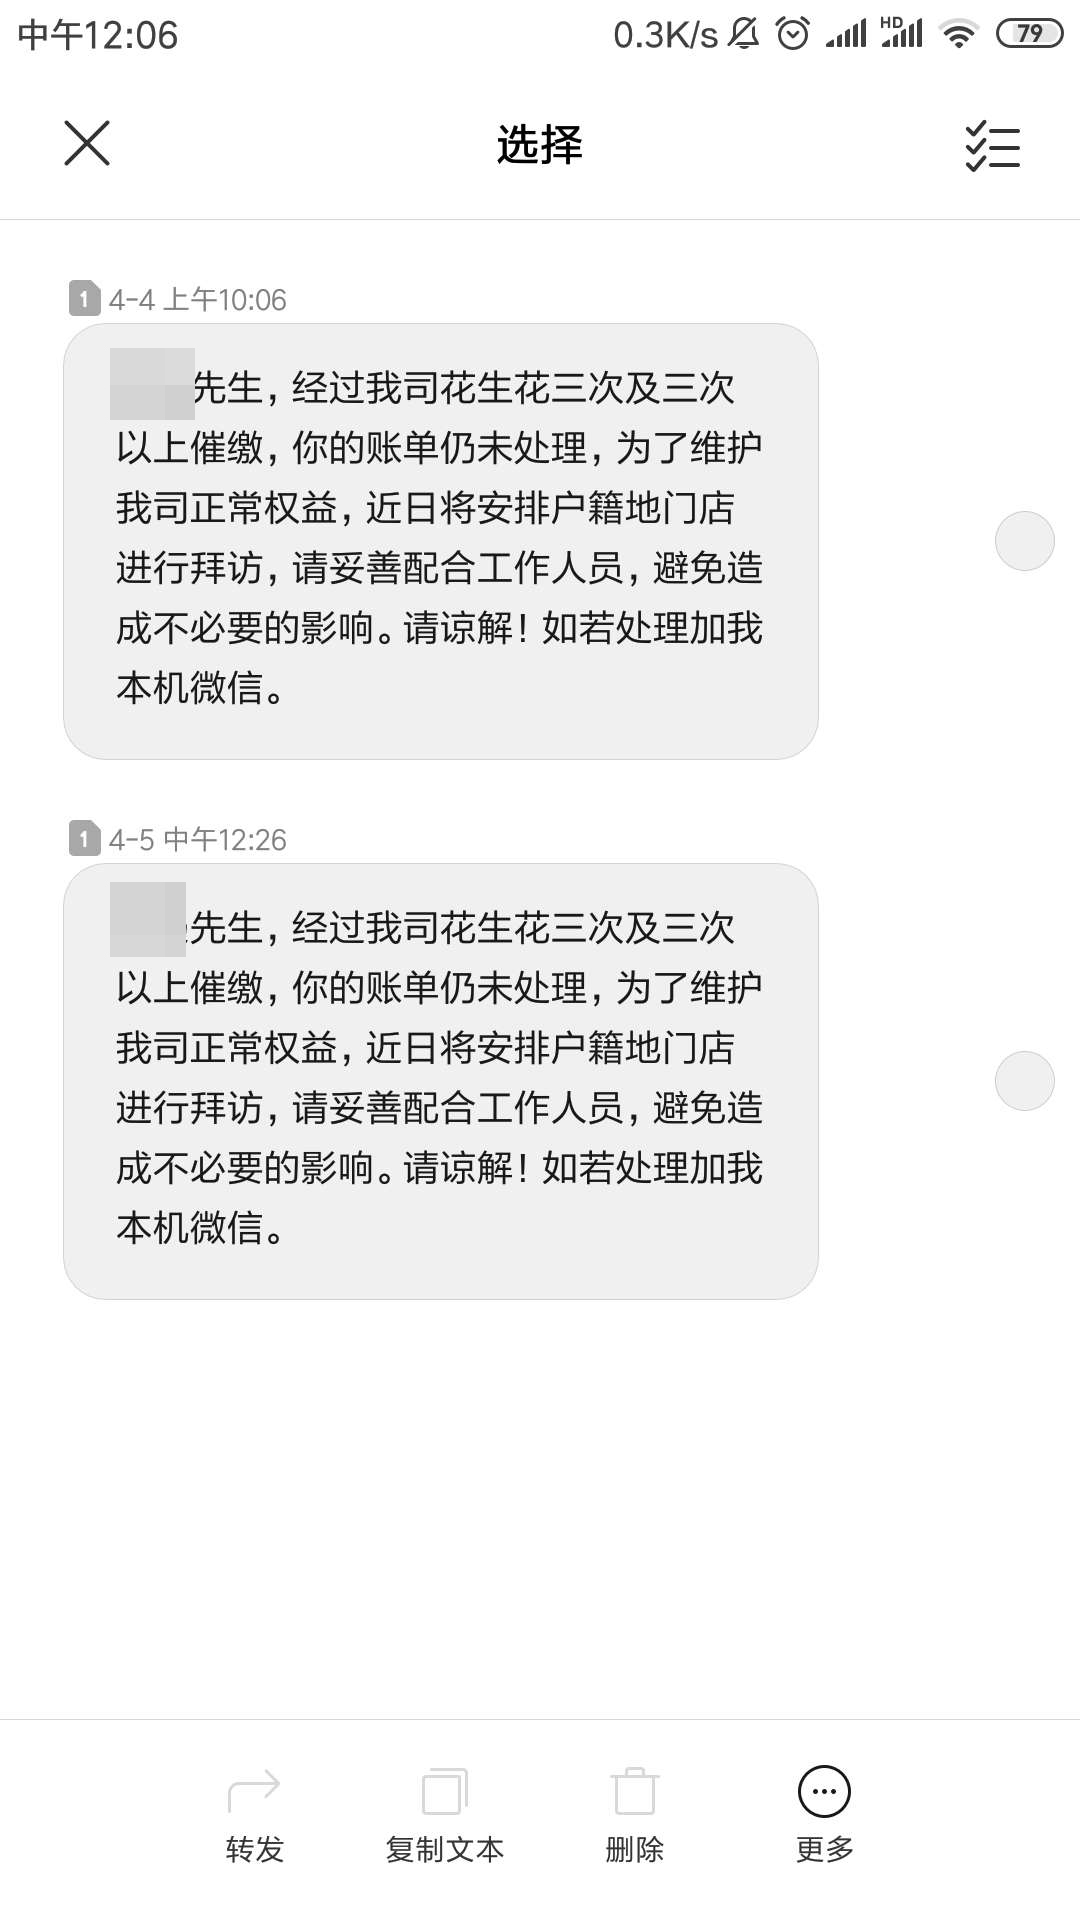 陈明收到的催收短信称“将安排户籍地门店进行拜访”。